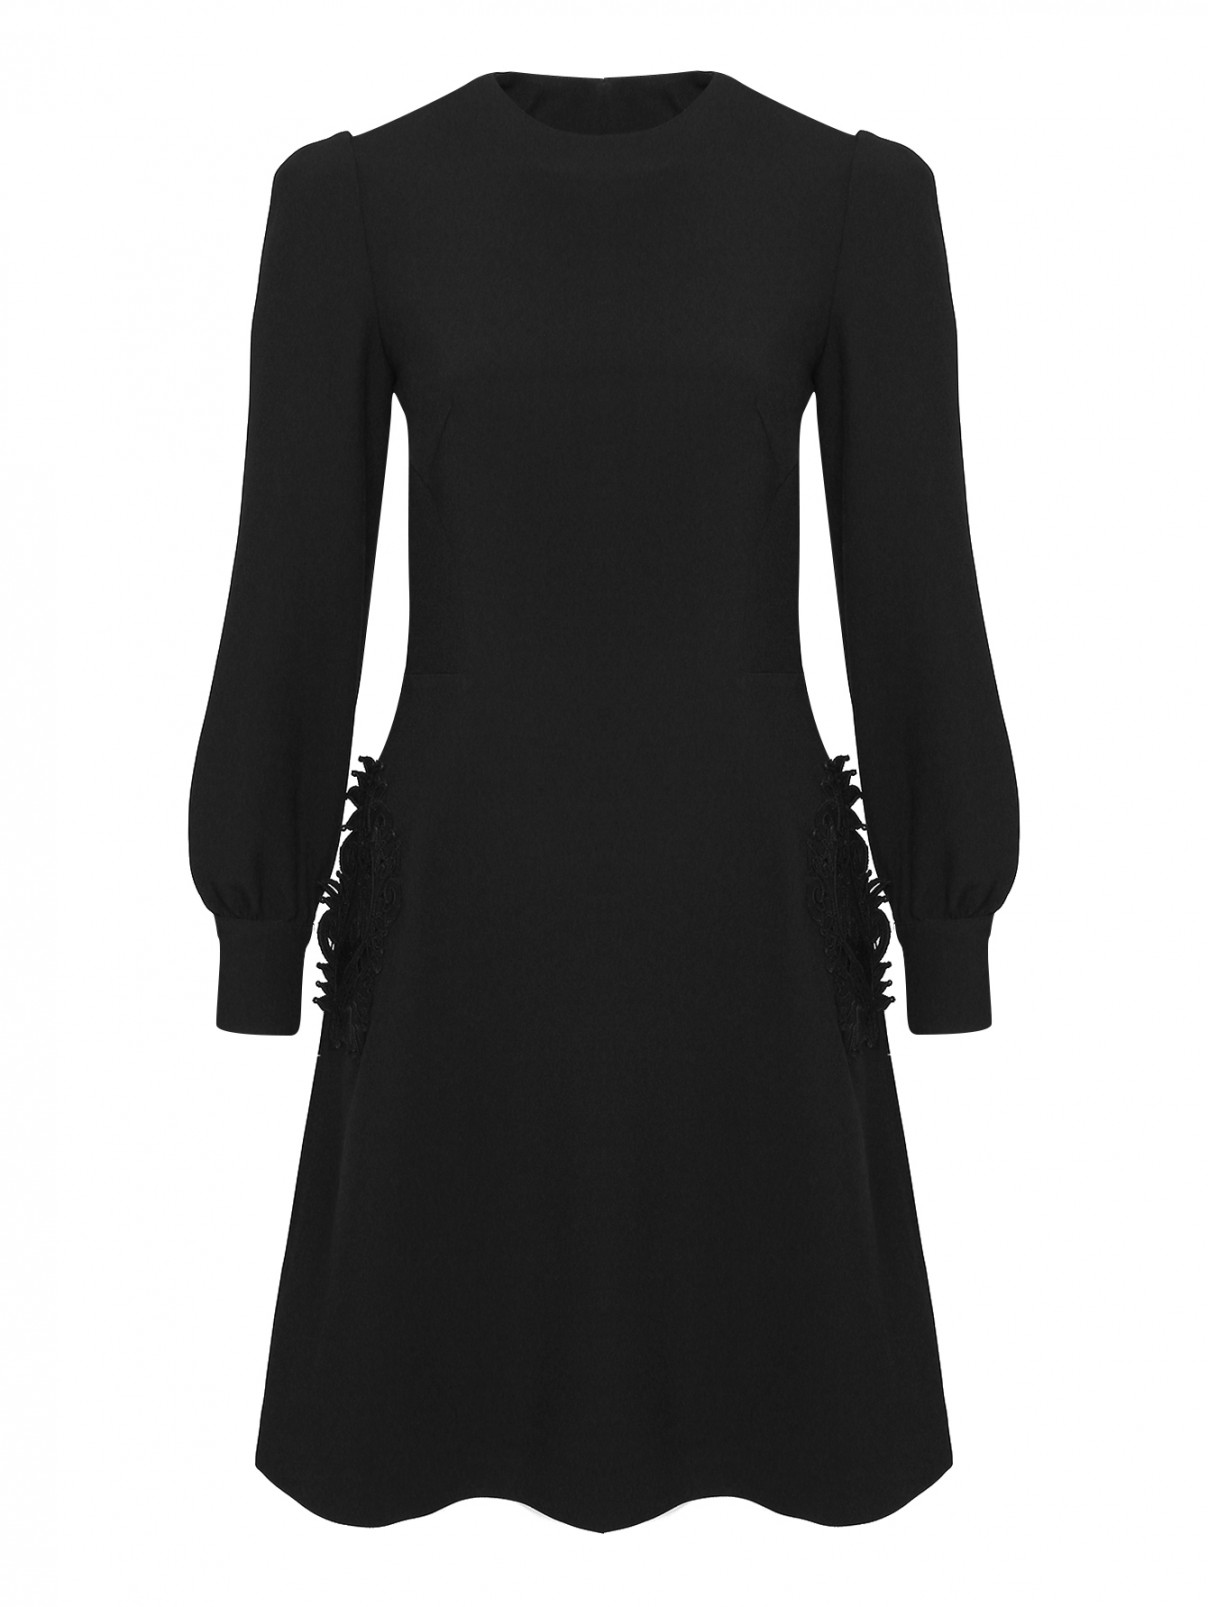 Платье расклешенного кроя с декоративной аппликацией Ermanno Scervino  –  Общий вид  – Цвет:  Черный